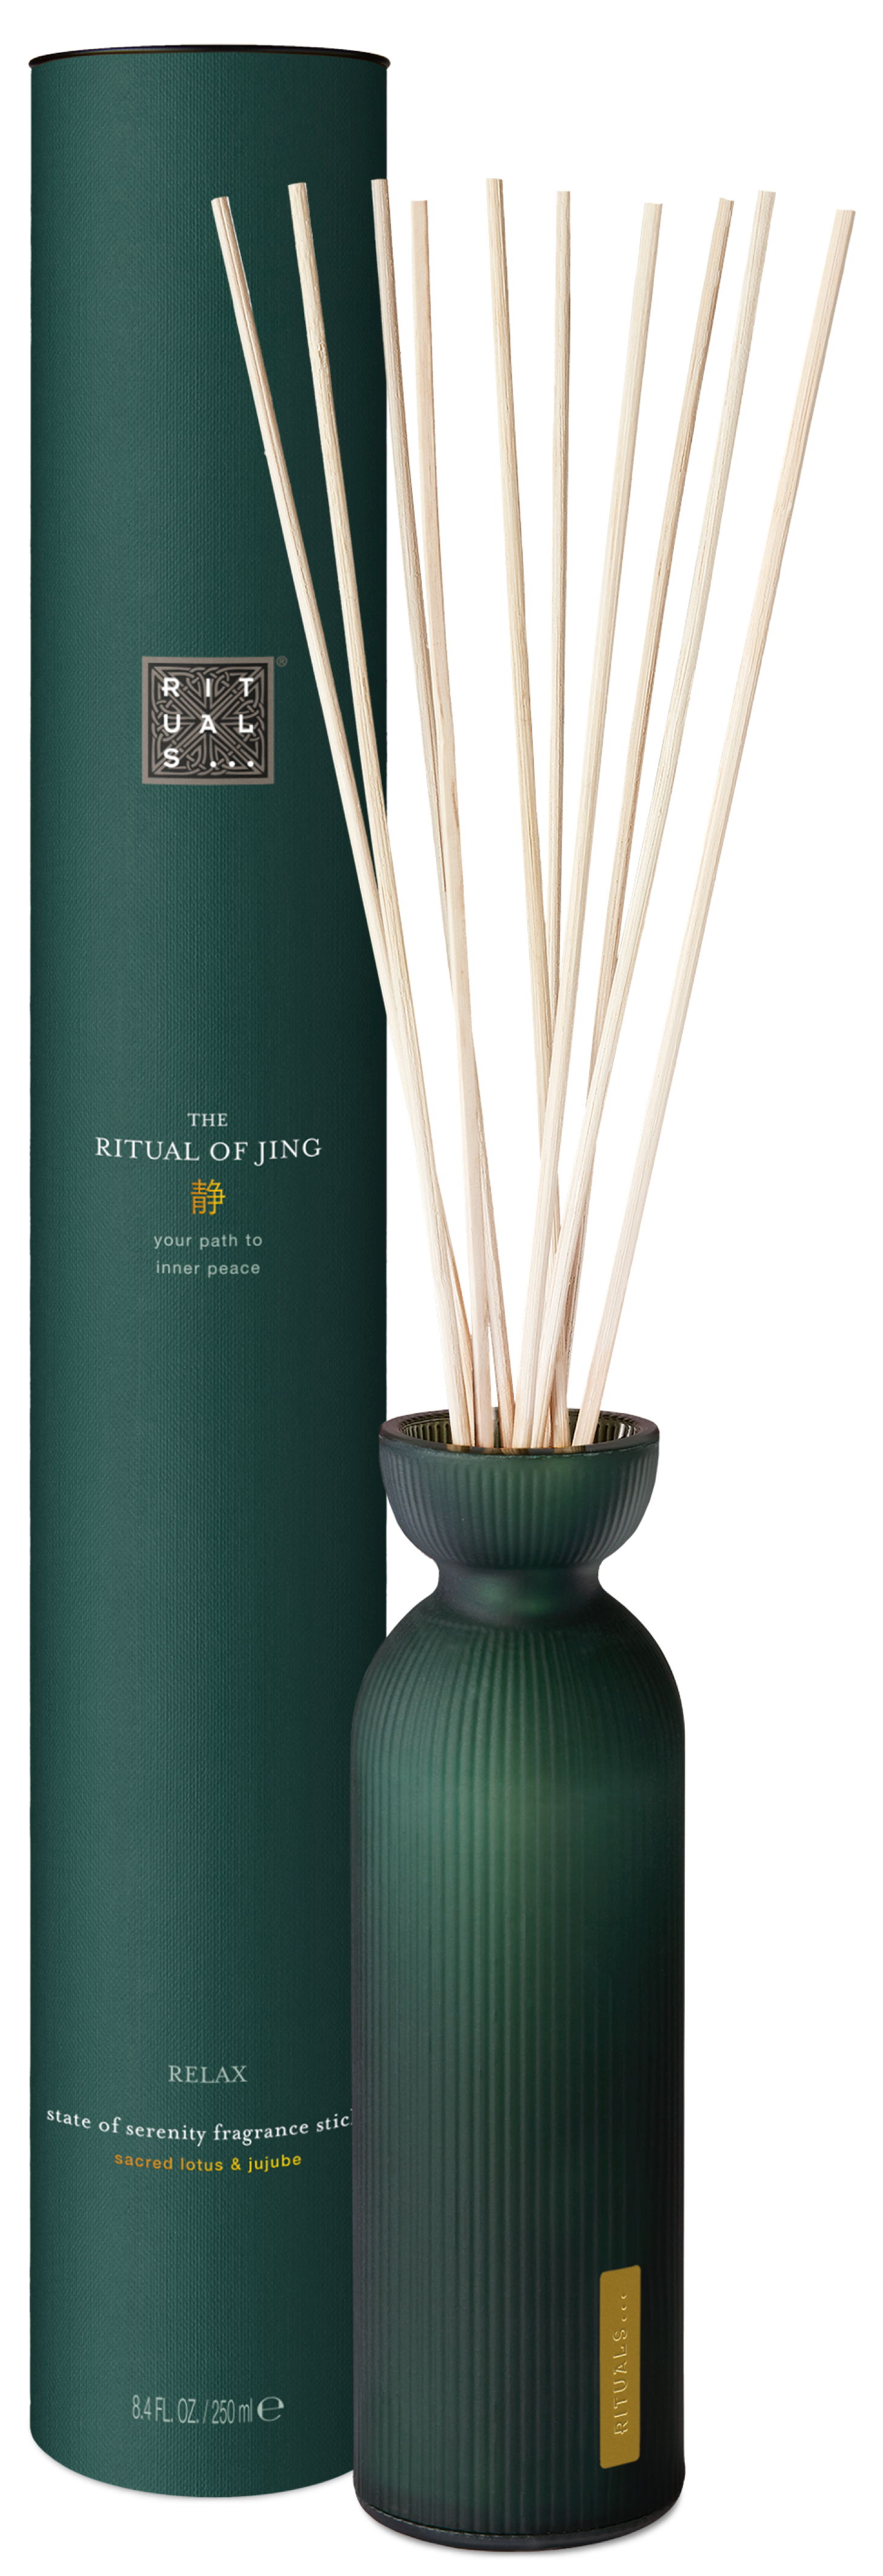 RITUALS Vass diffusor pinnar från The of Jing, 250 ml Kostar 447 kr hos Amazon och 299 kr hos Lyko. 